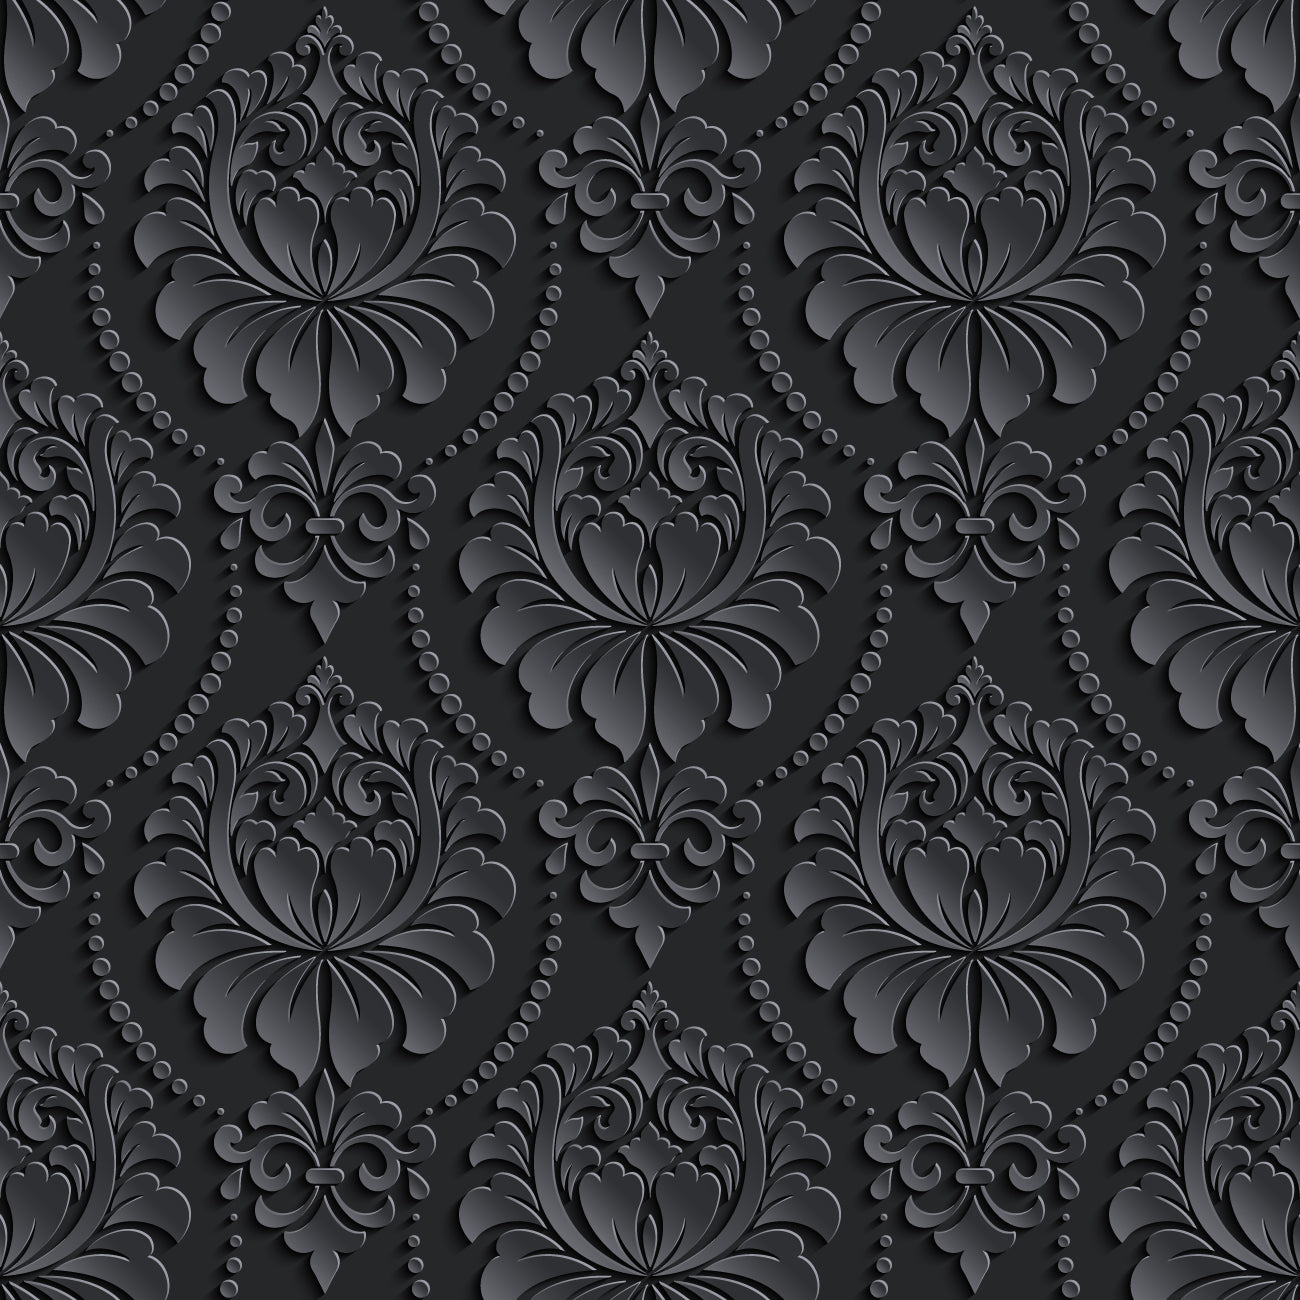 Black floral designer wallpaper